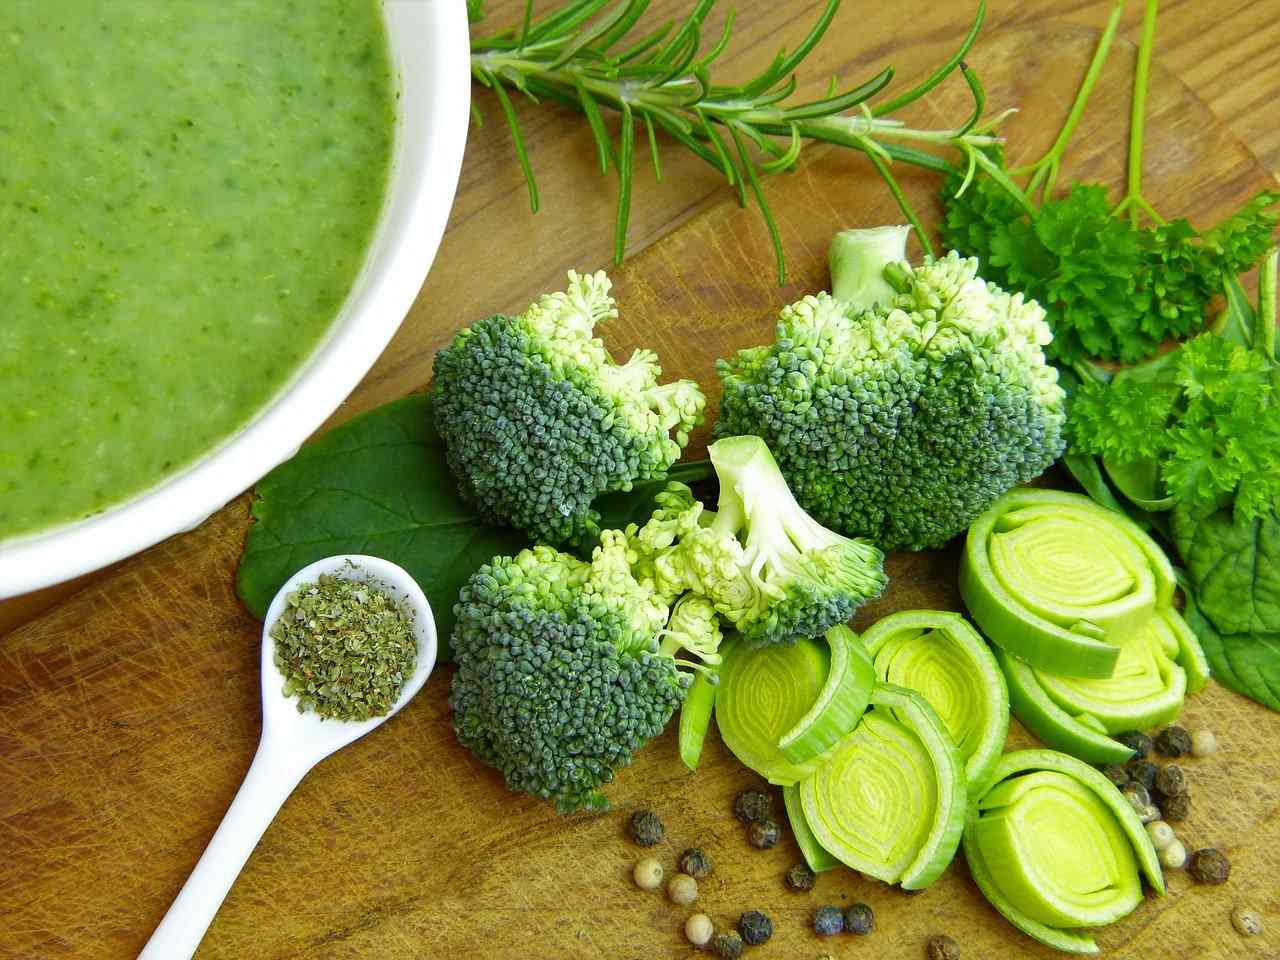 Zuppa di broccoli: dietetica e super nutriente